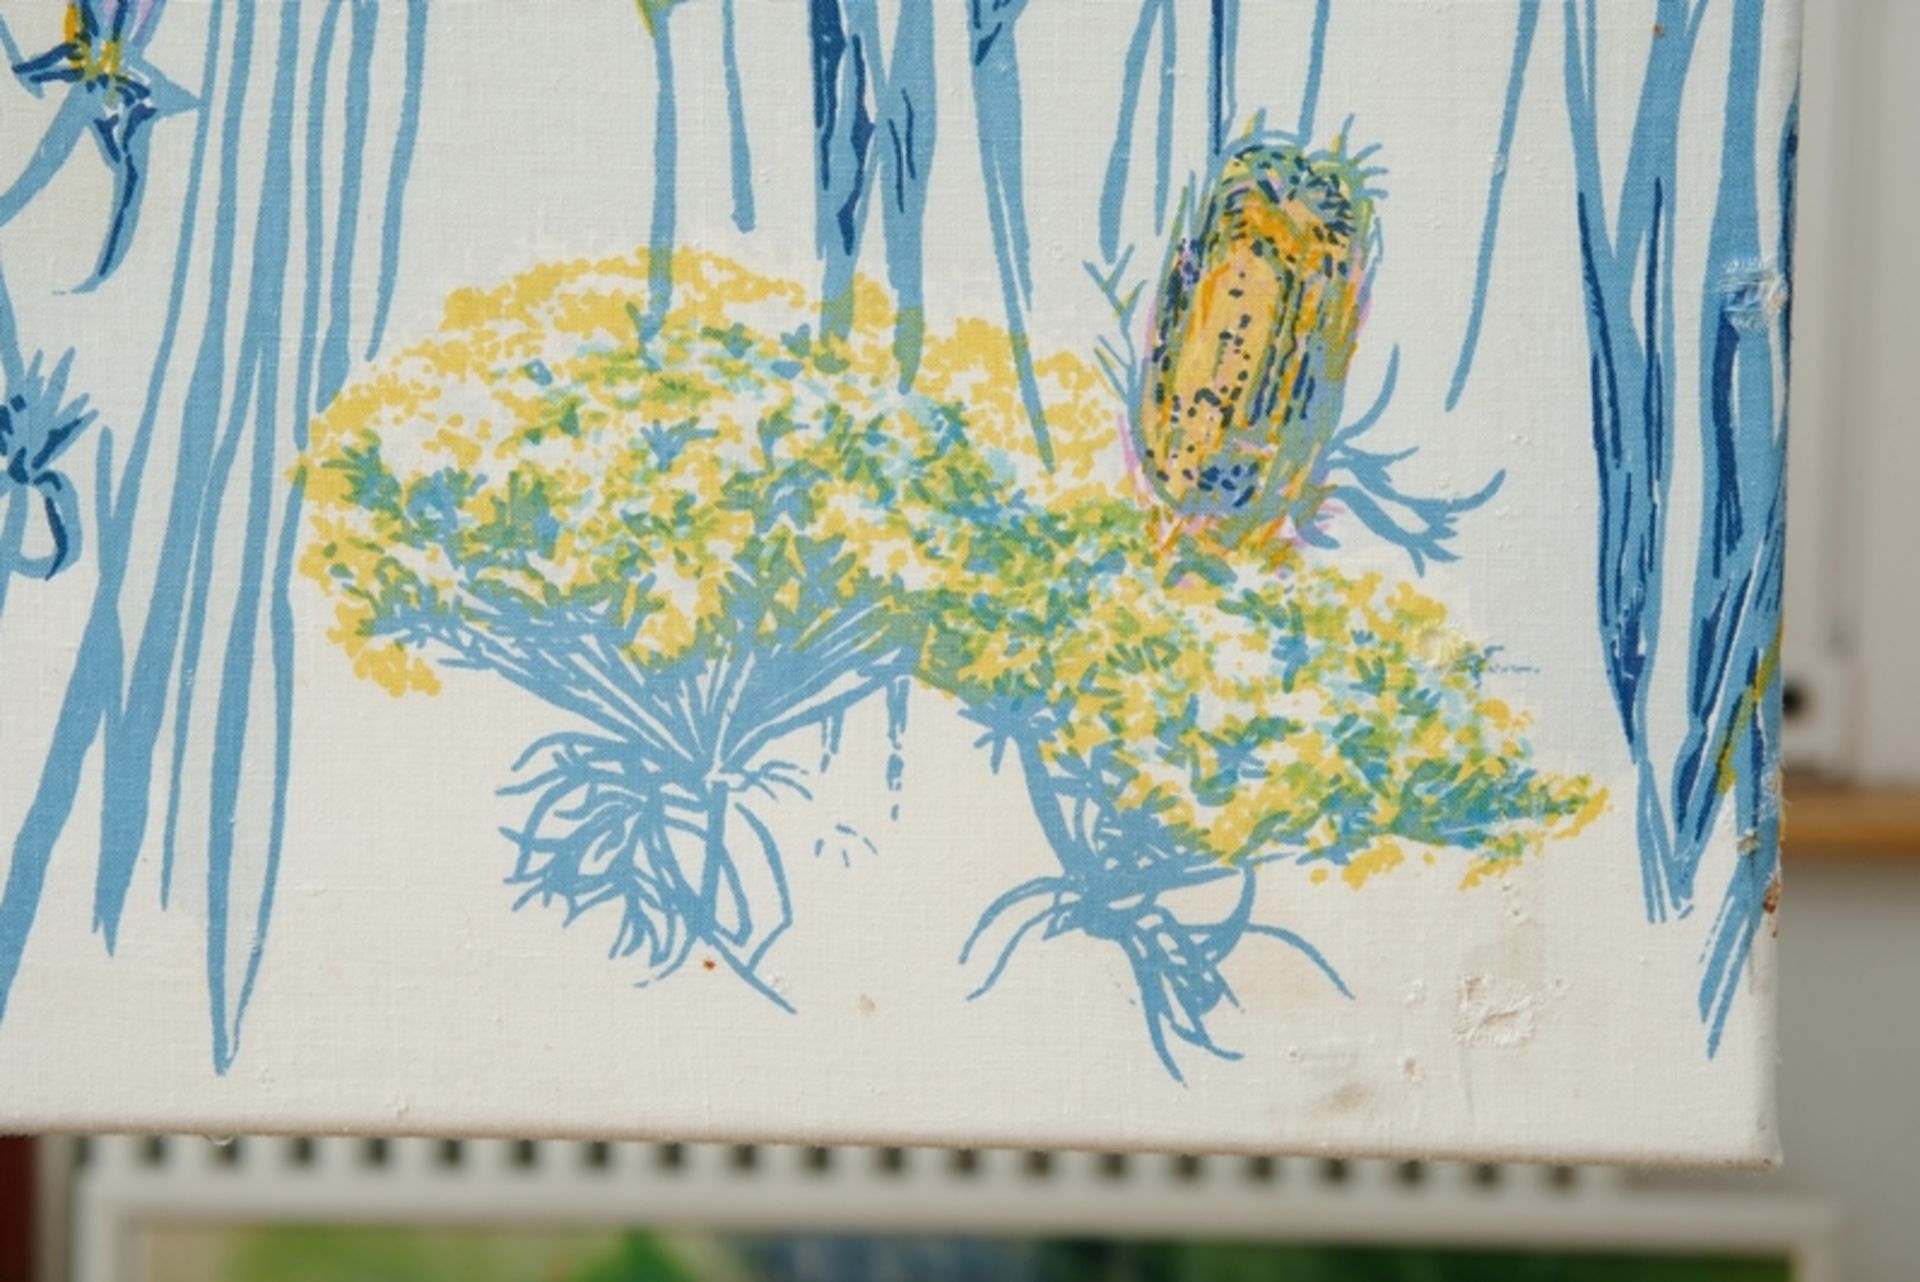 Grieshaber, HAP (1909-1981) "Vogelfrei II über Blumenwiese", 1974, Farbserigrafie auf Leinwand. Mee - Bild 3 aus 4